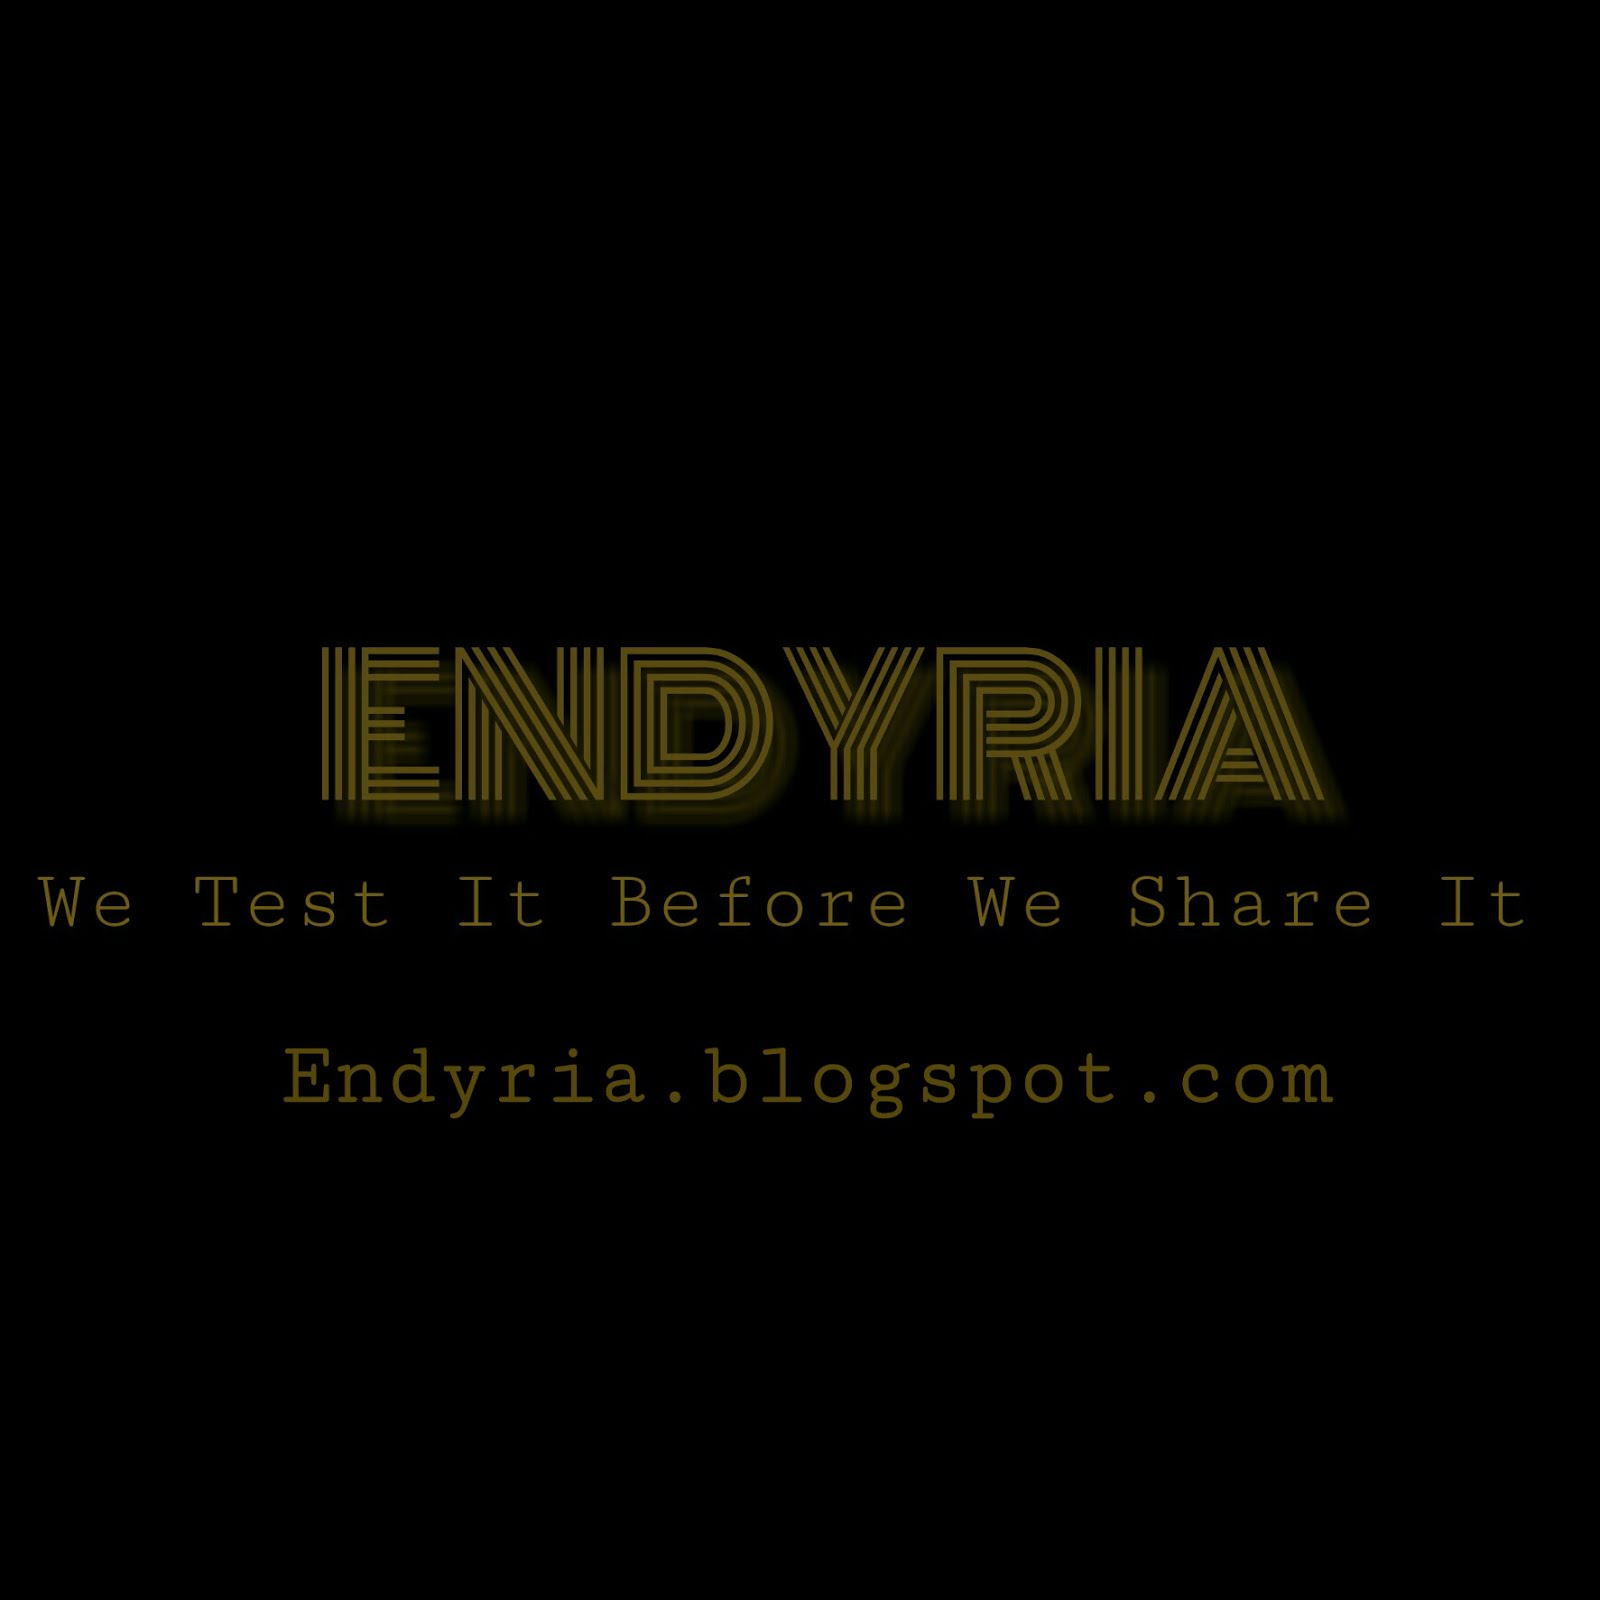 Endyria Long Term Investment